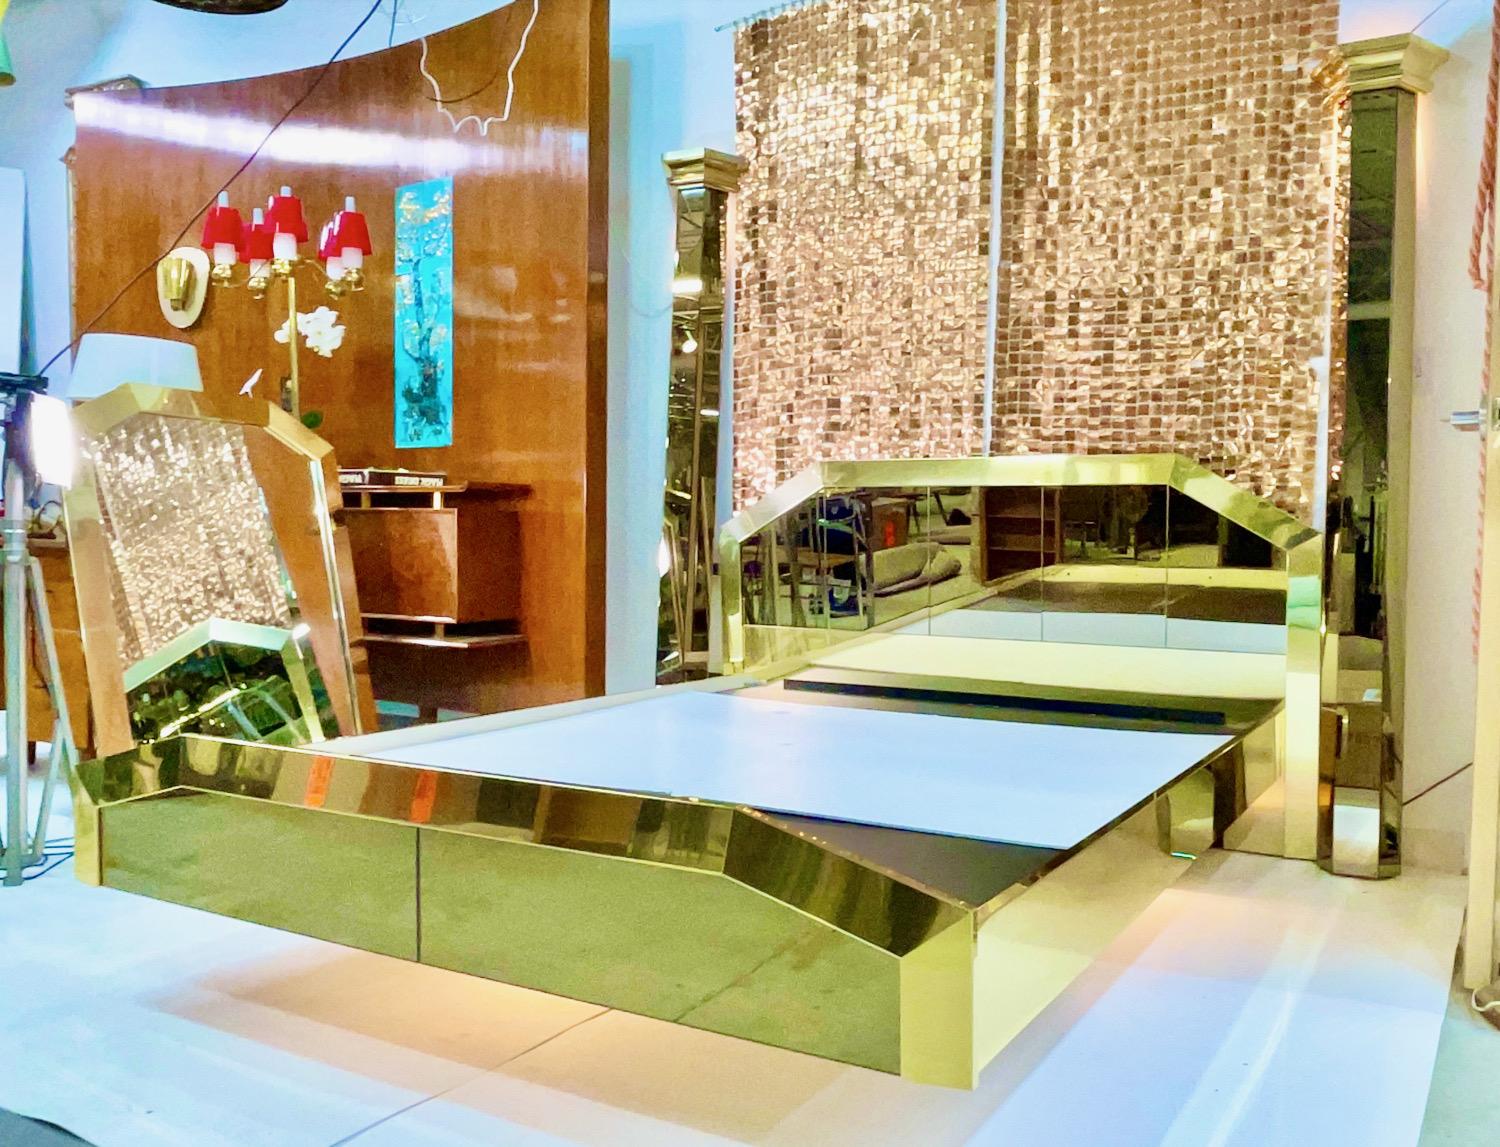 Wir haben derzeit ZWEI dieser Betten verfügbar.
Umwerfendes, schwebendes Queen-Size-Bett mit zwei Postern, verkleidet mit poliertem Messing und bronziertem Spiegelglas, entworfen von O. B. Solie für Ello Furniture Manufacturing Co. aus der 